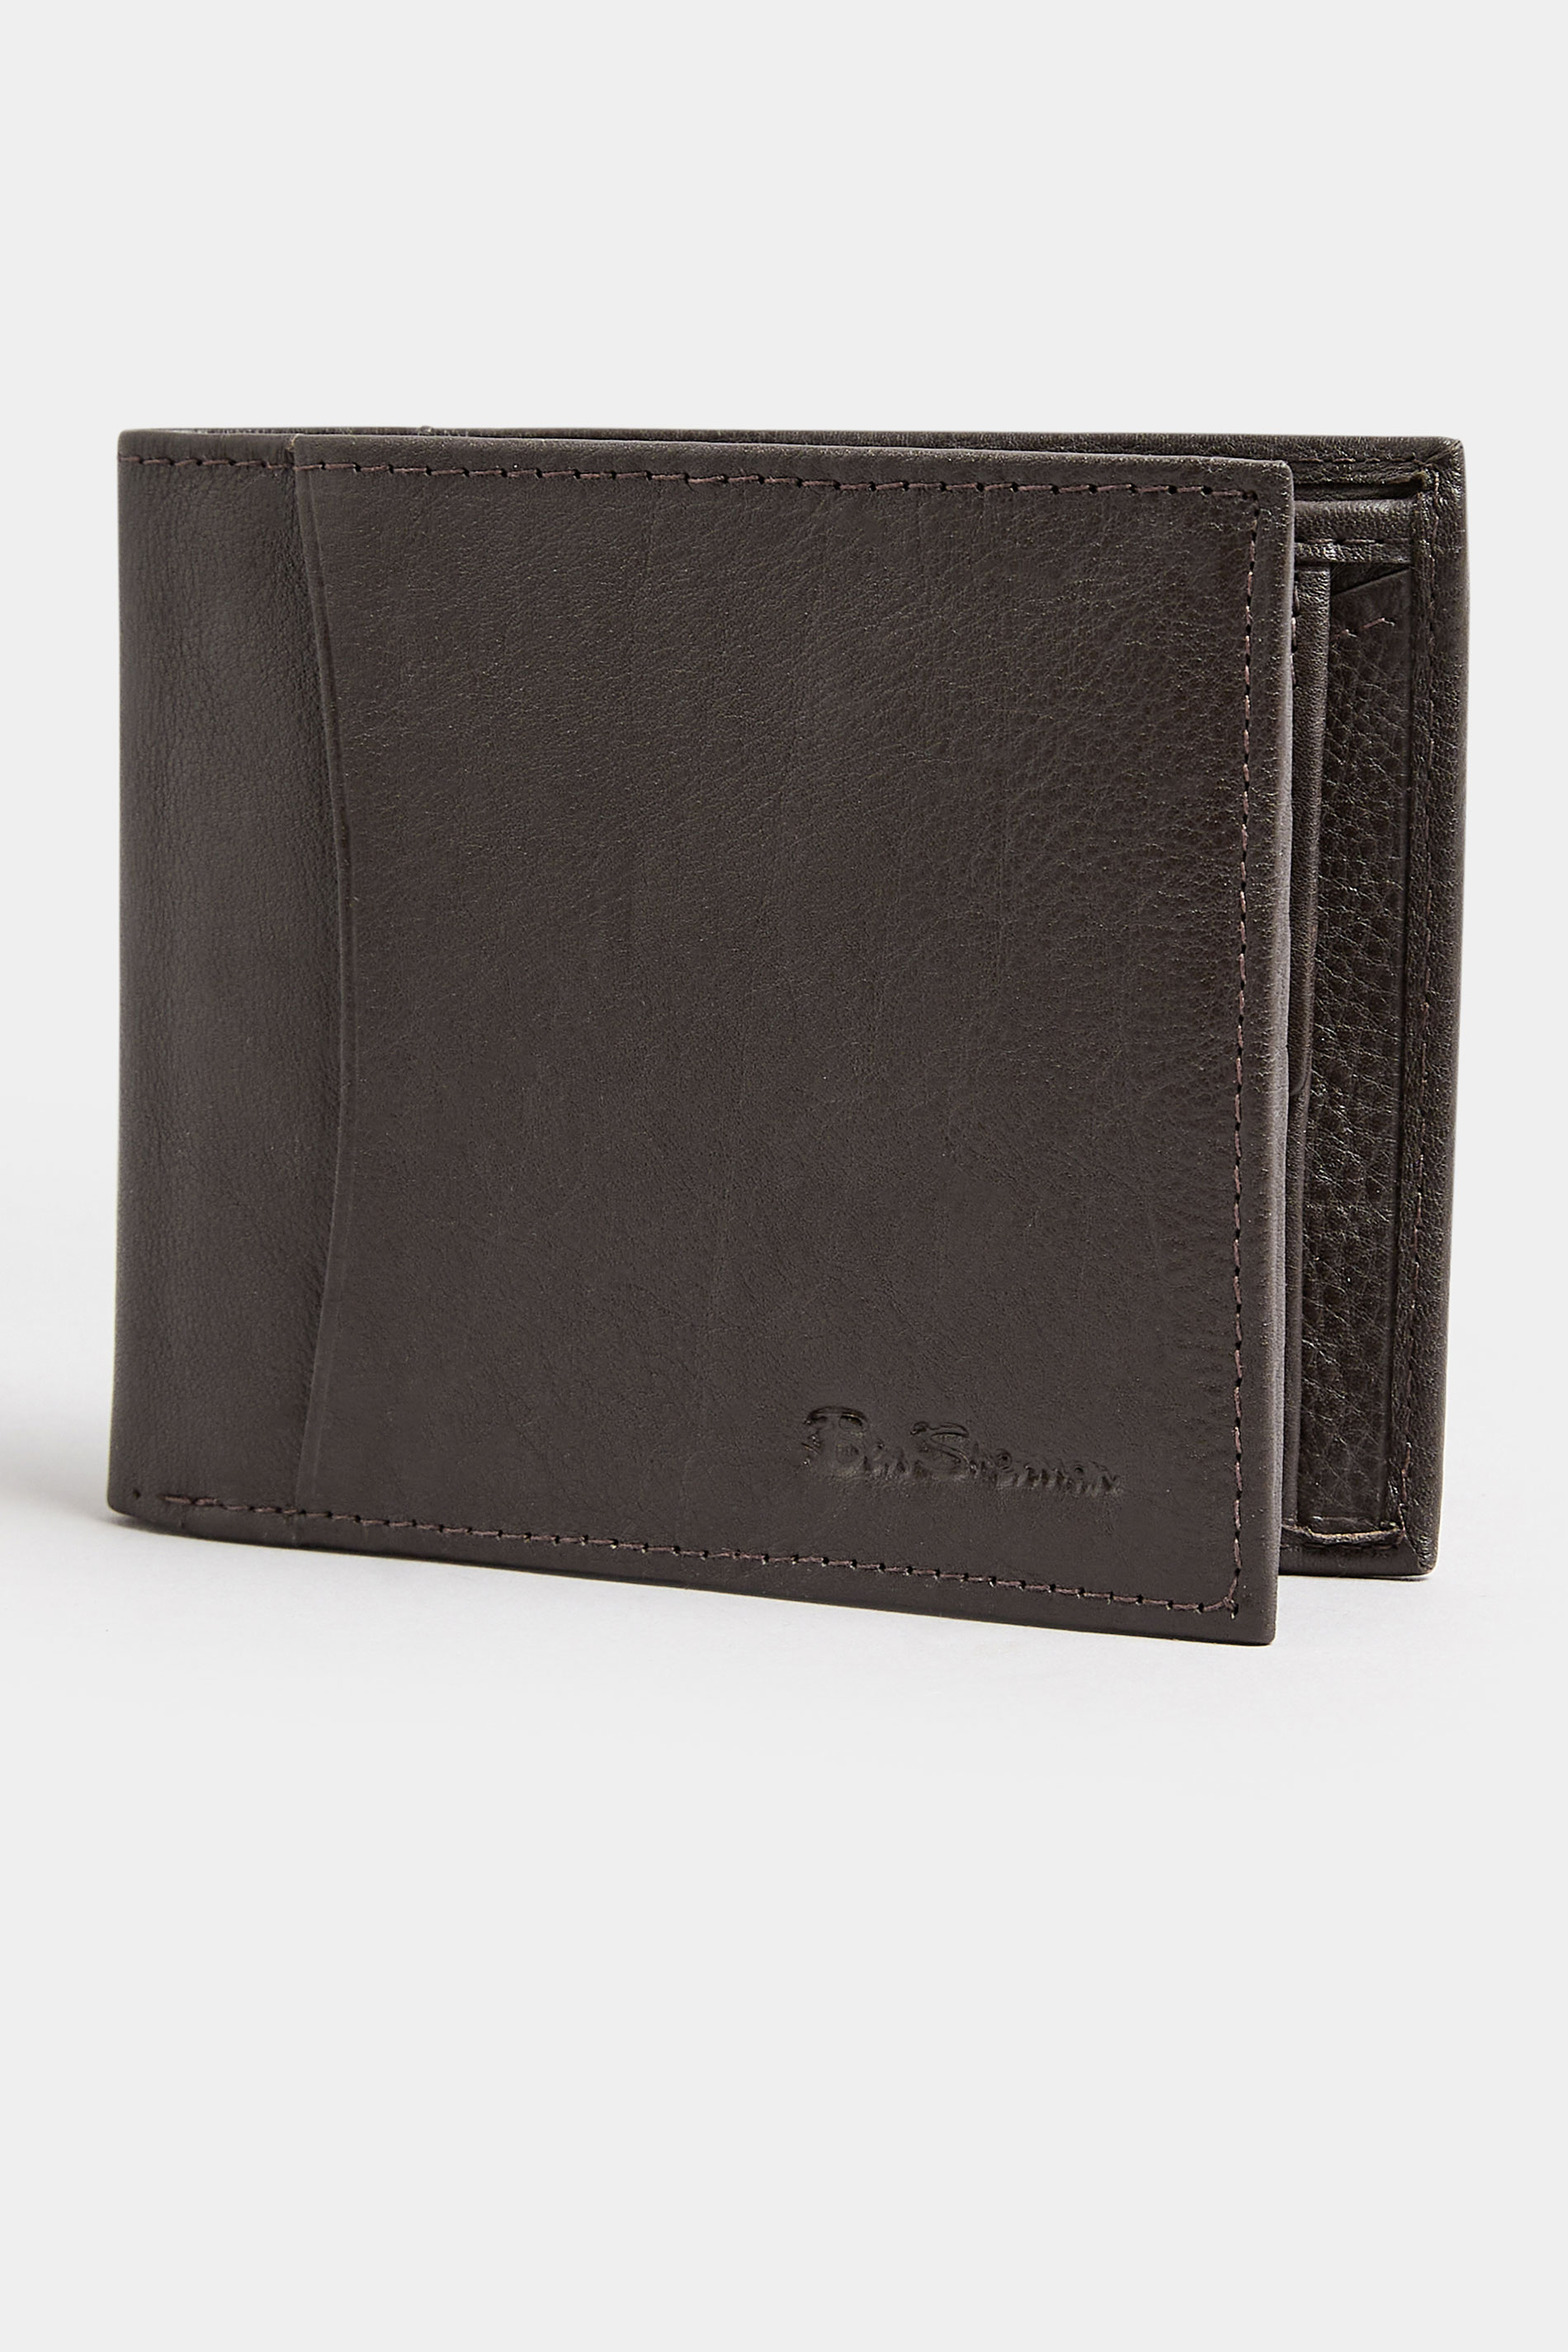 BEN SHERMAN Brown Leather Bi-Fold Wallet 1